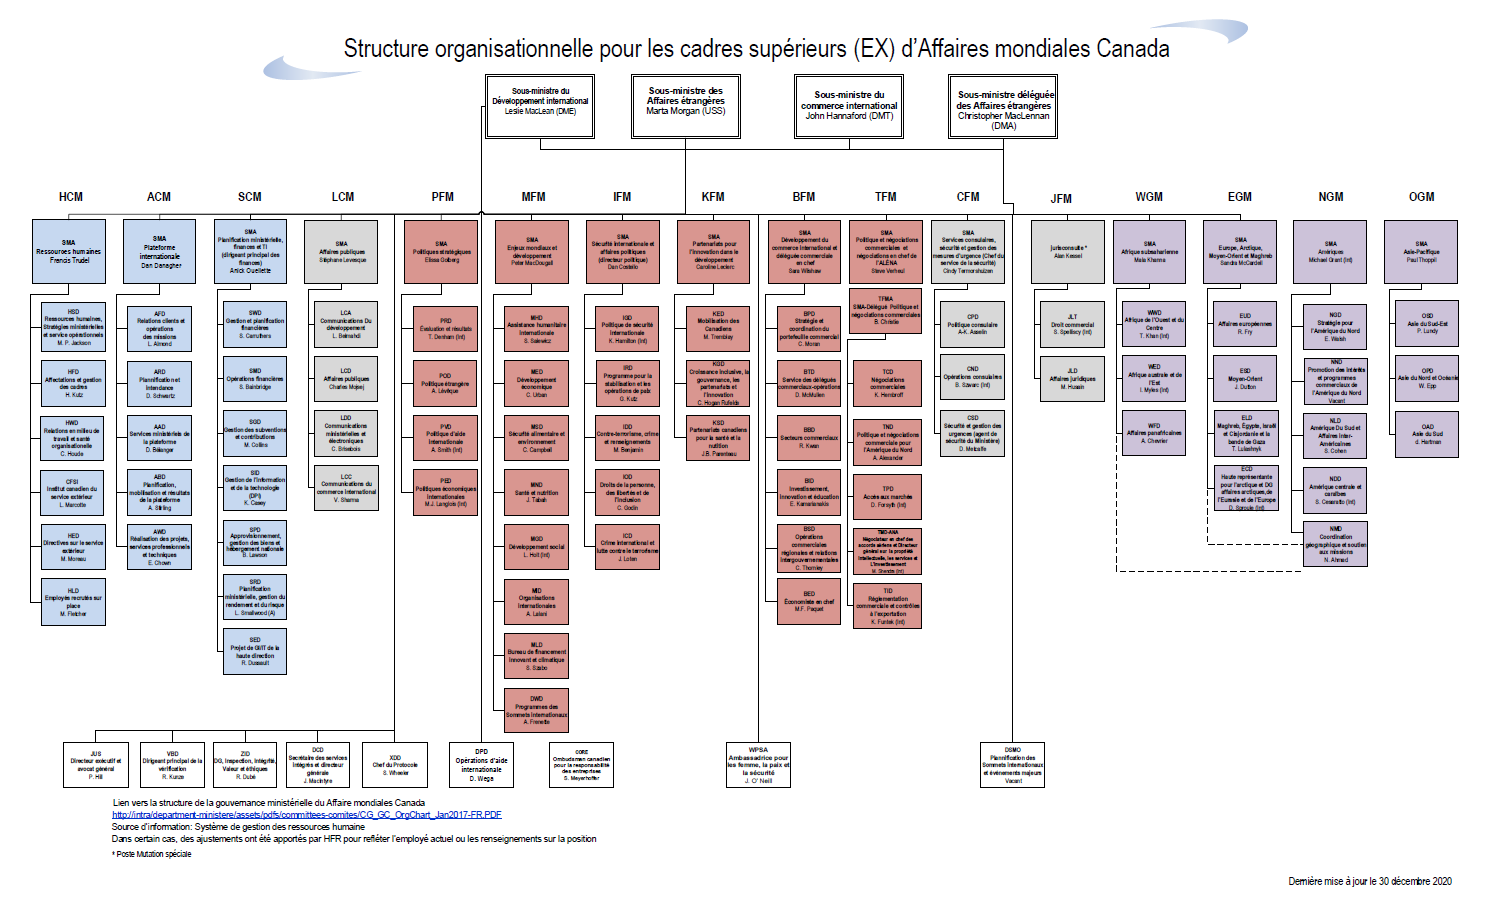 Structure organisationnelle de la direction (EX) d’Affaires mondiales Canada